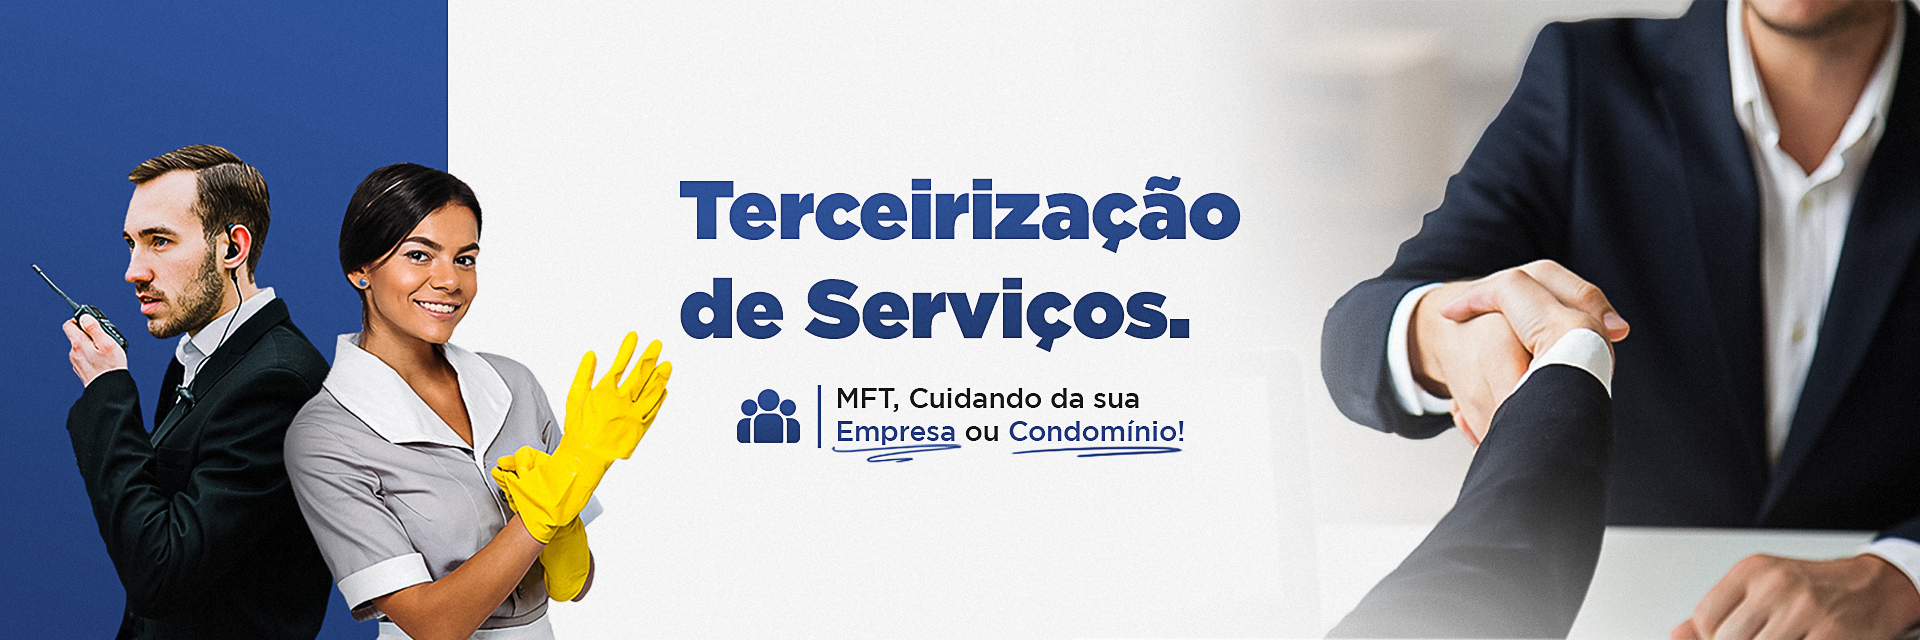 MFT-Segurança-e-Serviços-Banner-Site-MobileTerceirização-de-Serviços---Banner-Site-Mobile